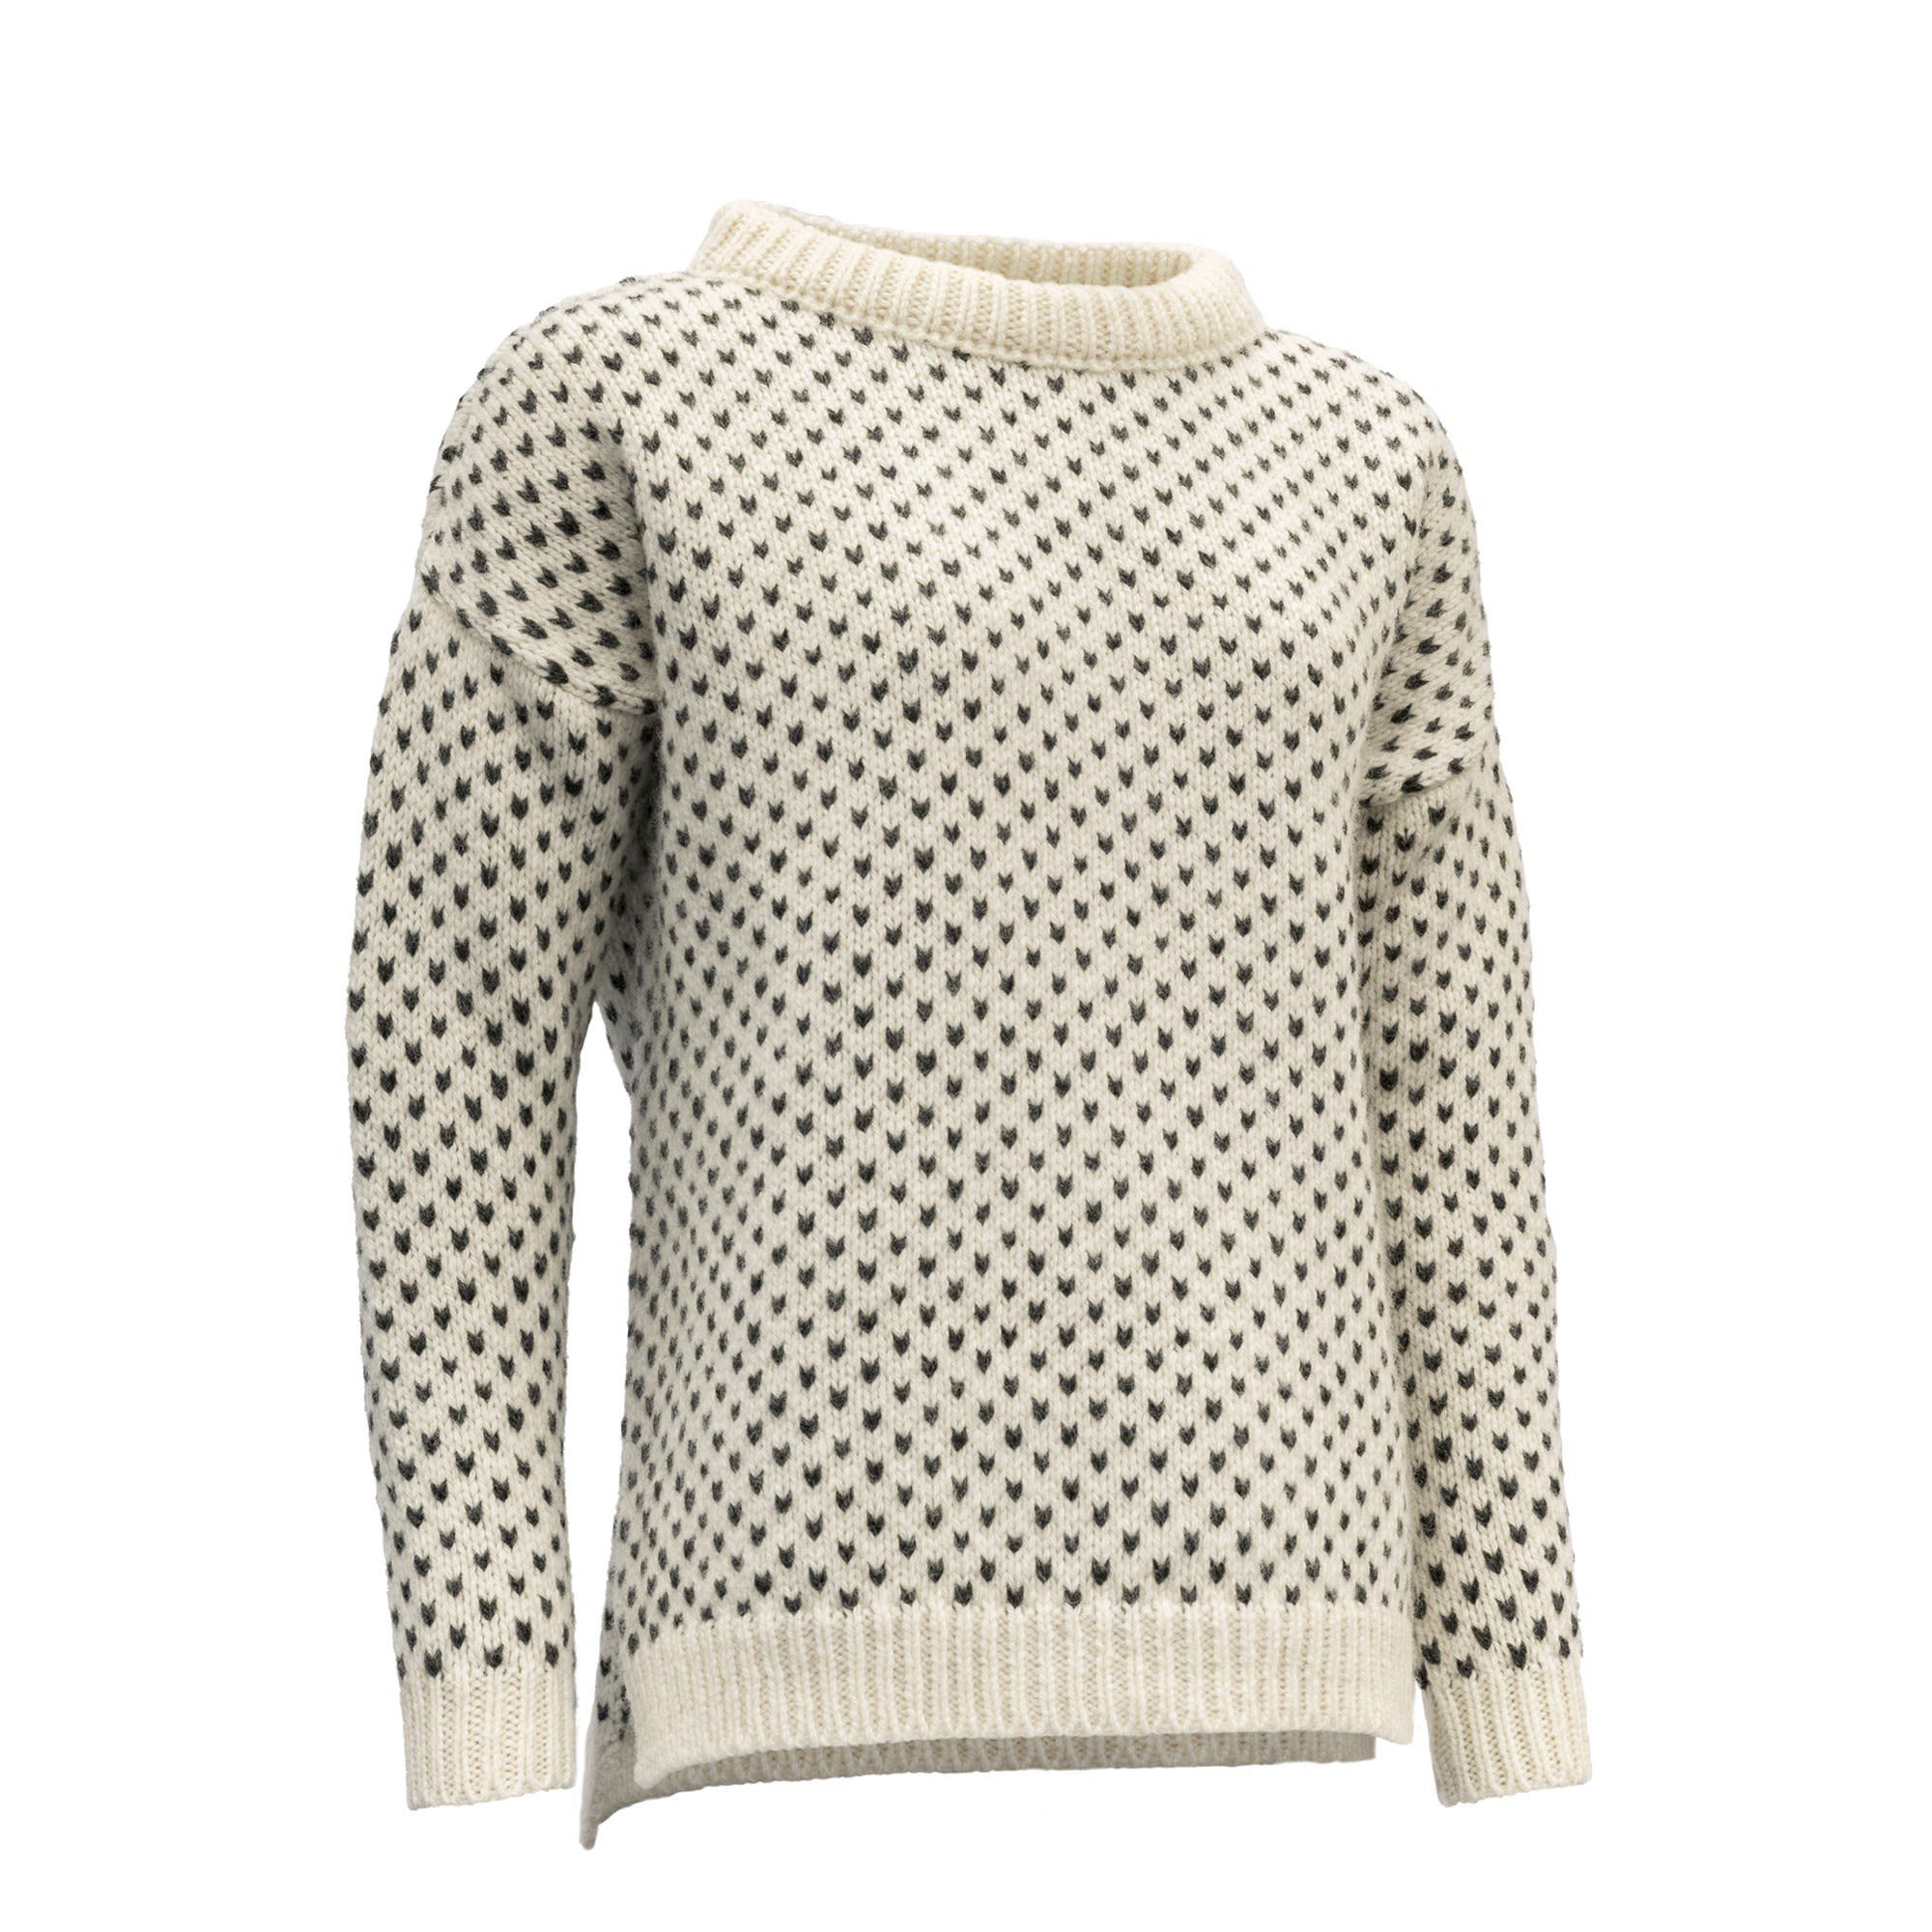 Wool Sweater Sweater Damen Offwhite W Nordsjo Fleecepullover Devold Devold